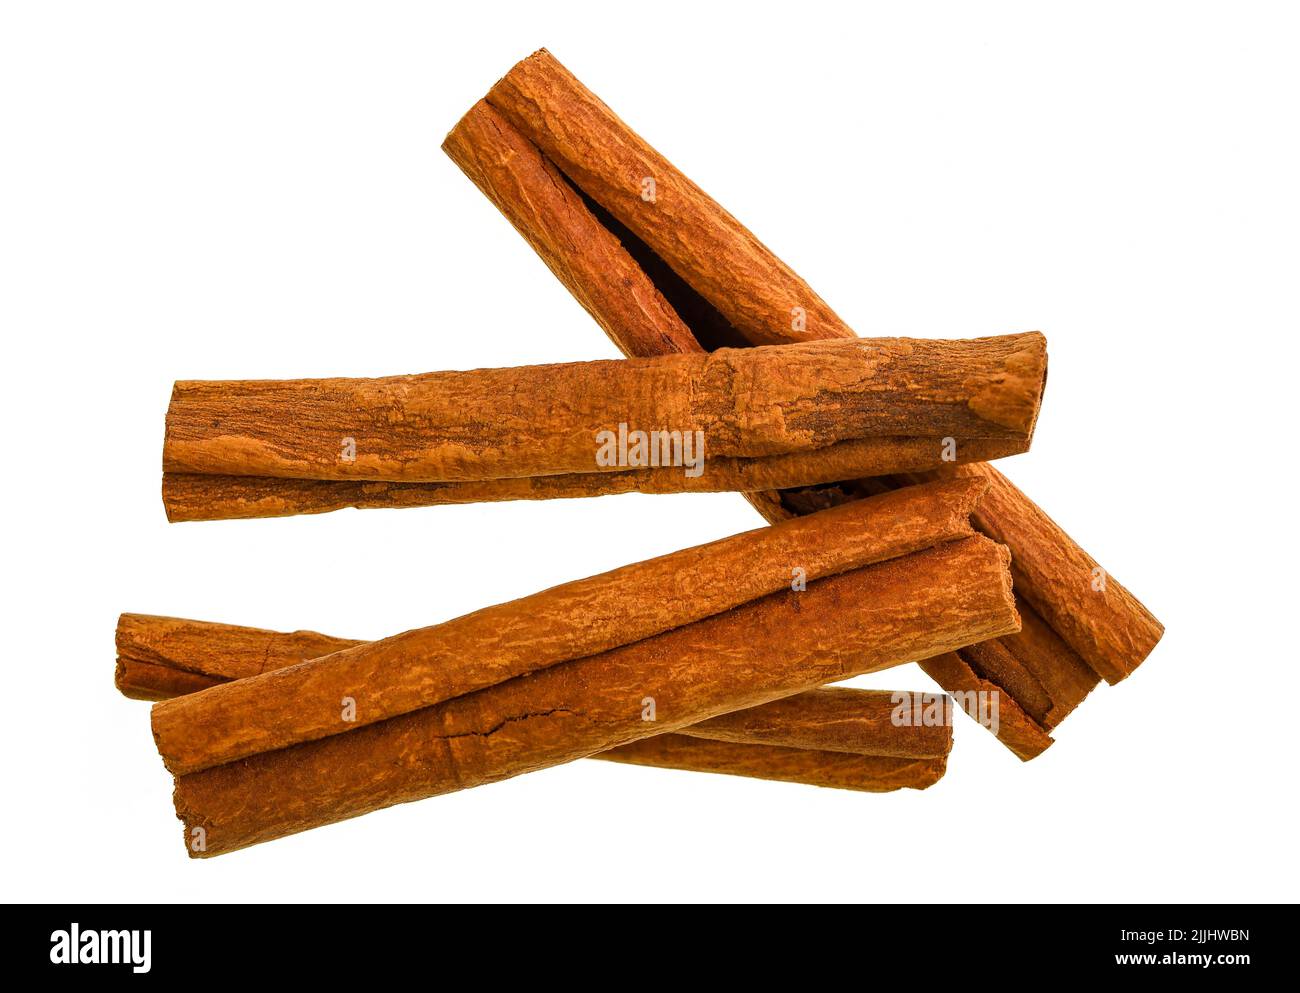 La cannelle est une épice faite à partir de l'écorce intérieure des arbres scientifiquement connue sous le nom de Cinnamomum les bâtons de cannelle sont les bandes d'écorce intérieure roulées qui se courbent Banque D'Images